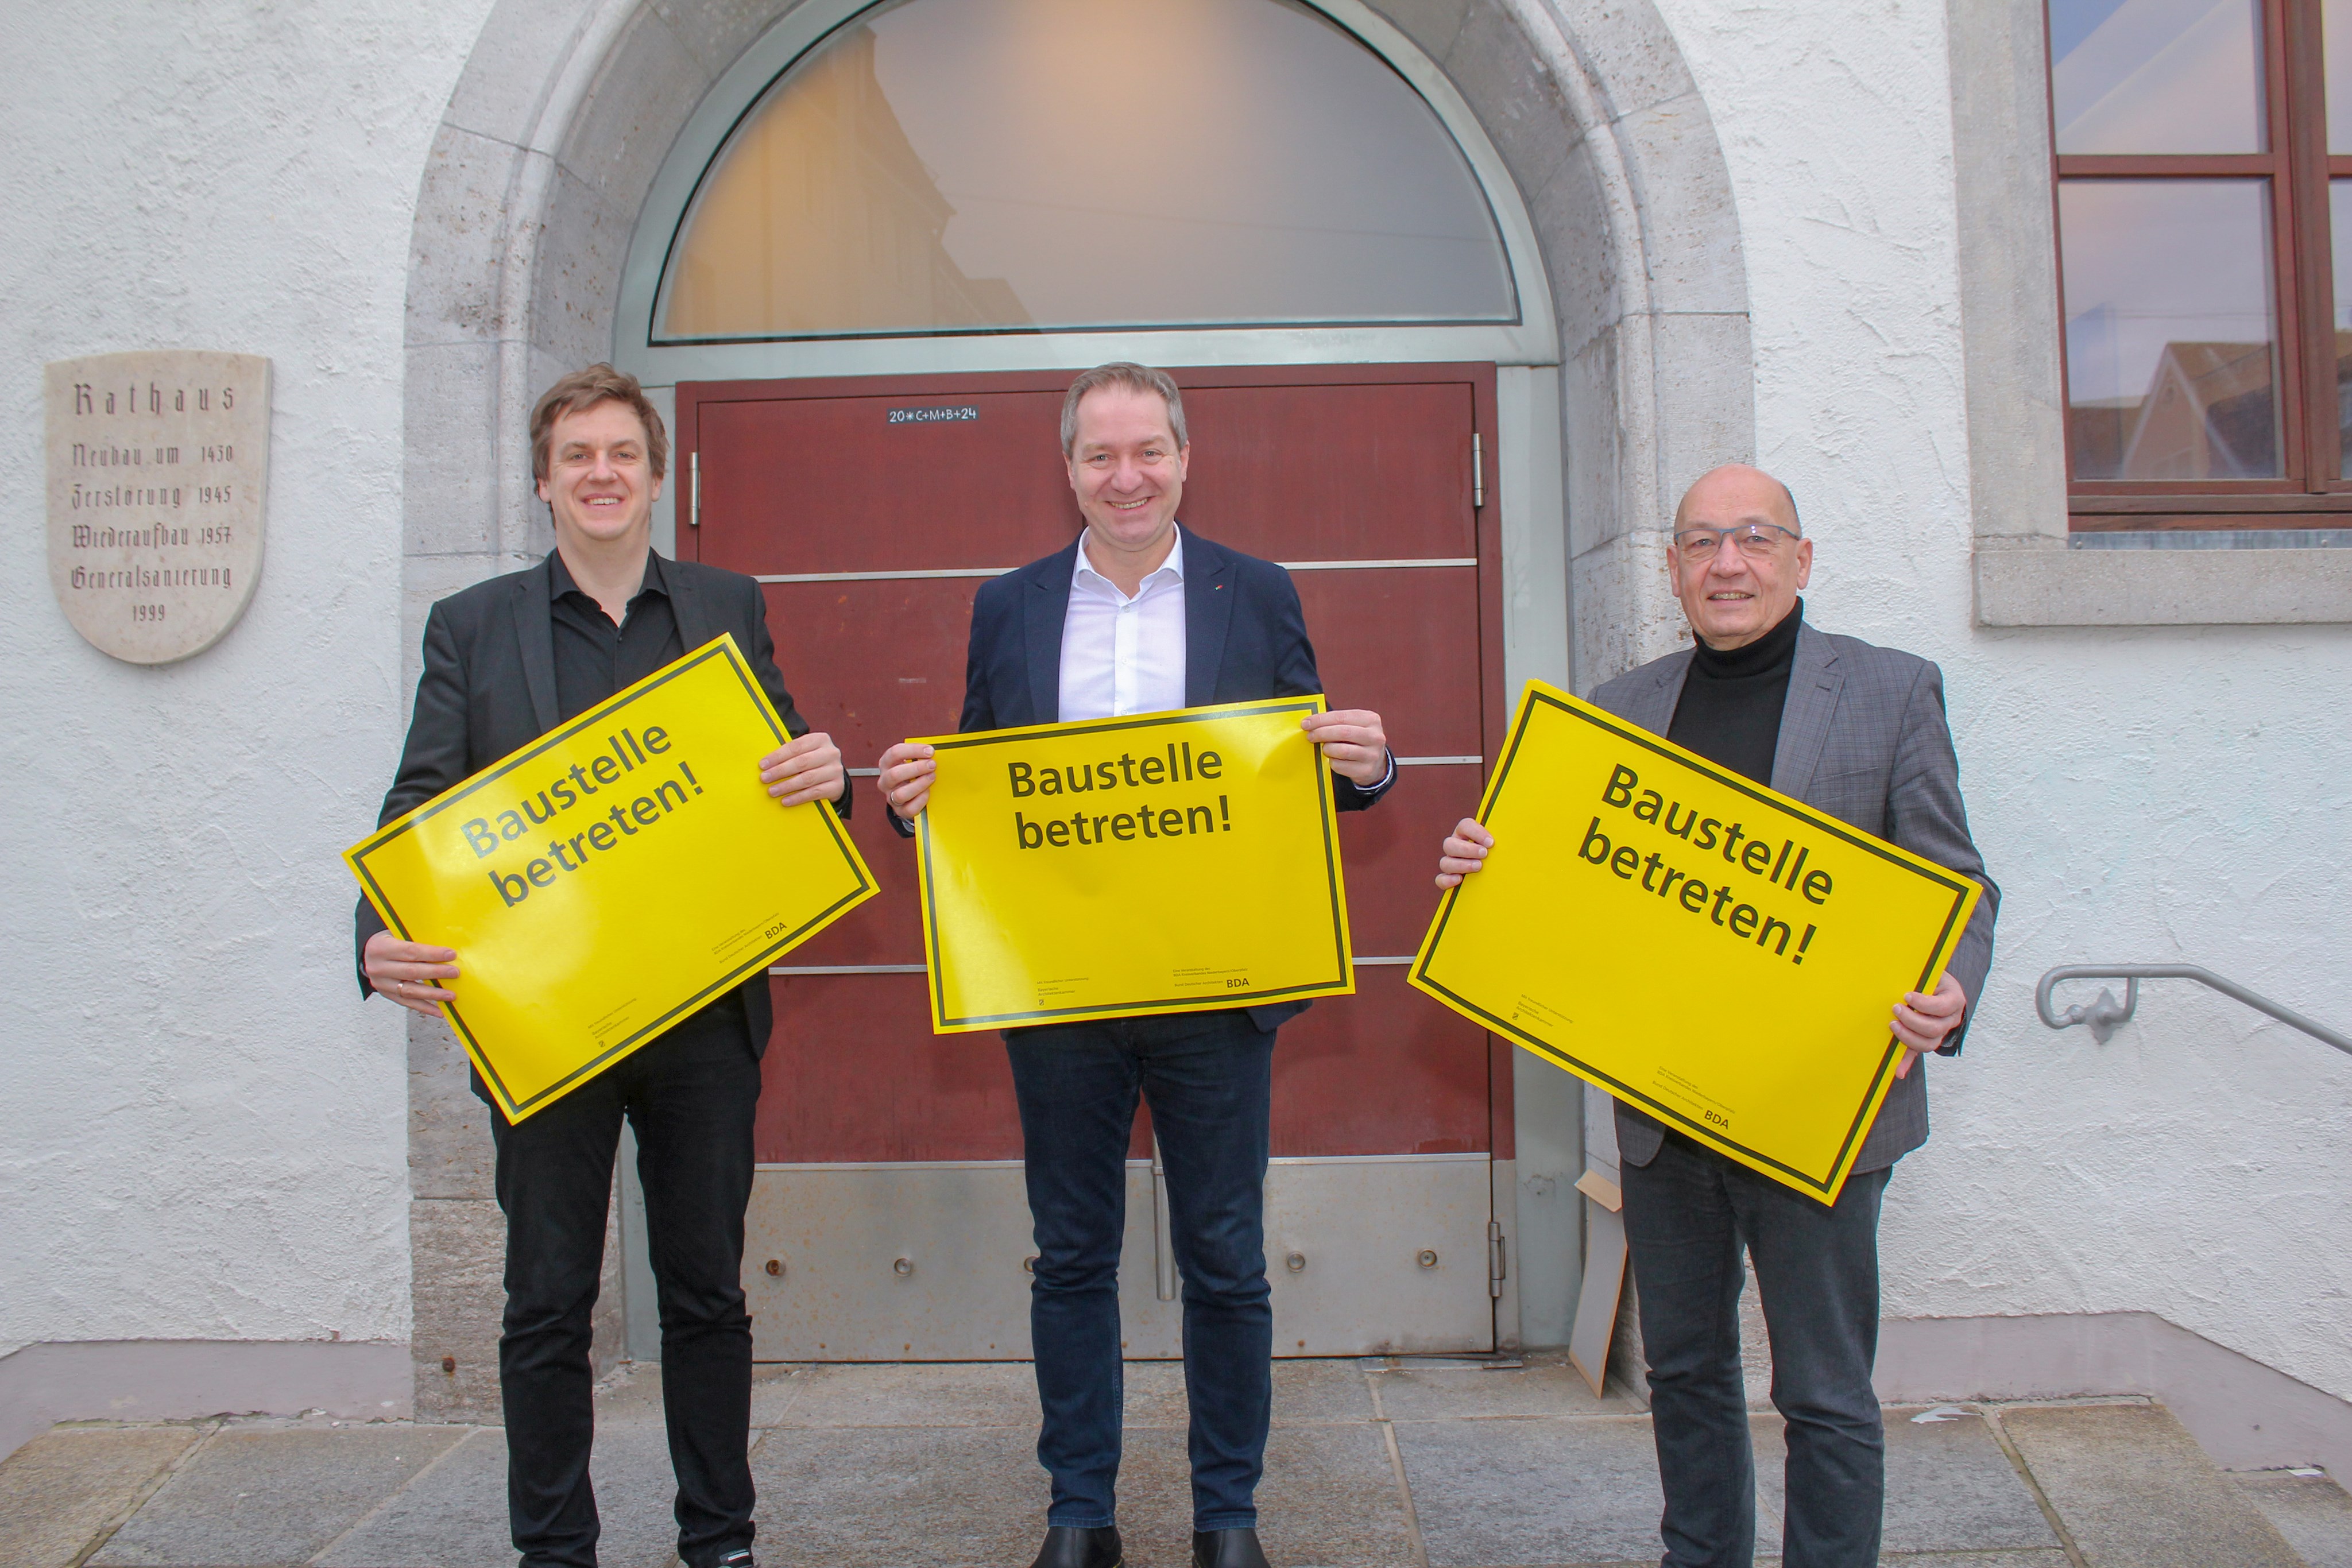 Laden ein zur Baustellenführung: Architekt Michael Kühnlein, Oberbürgermeister Markus Ochsenkühn und Roland Feierle vom Hochbauamt.